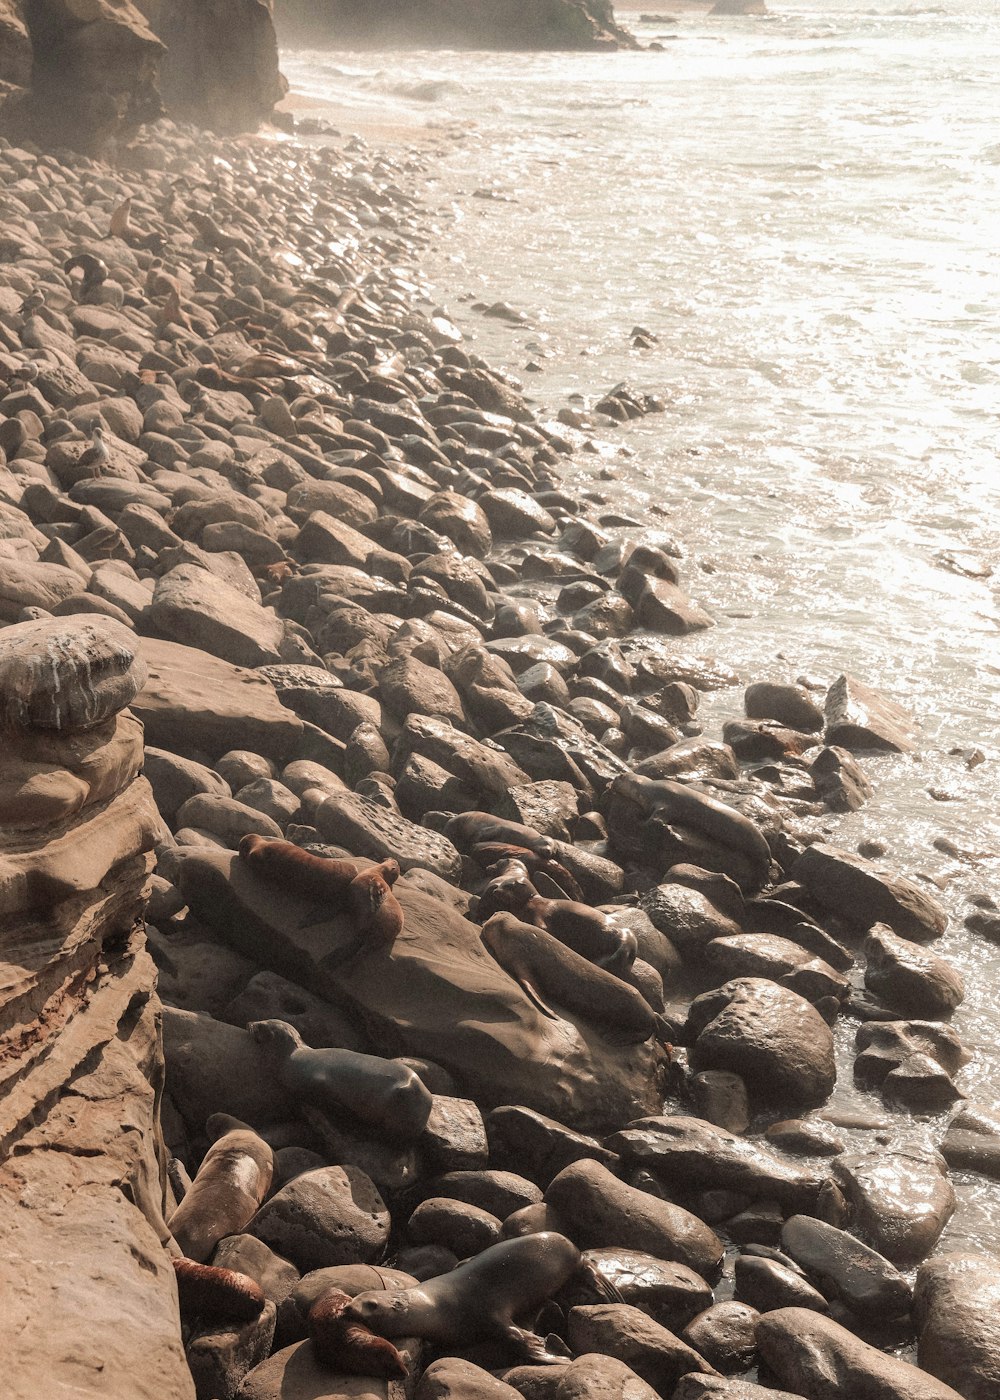 brown rocks on seashore during daytime